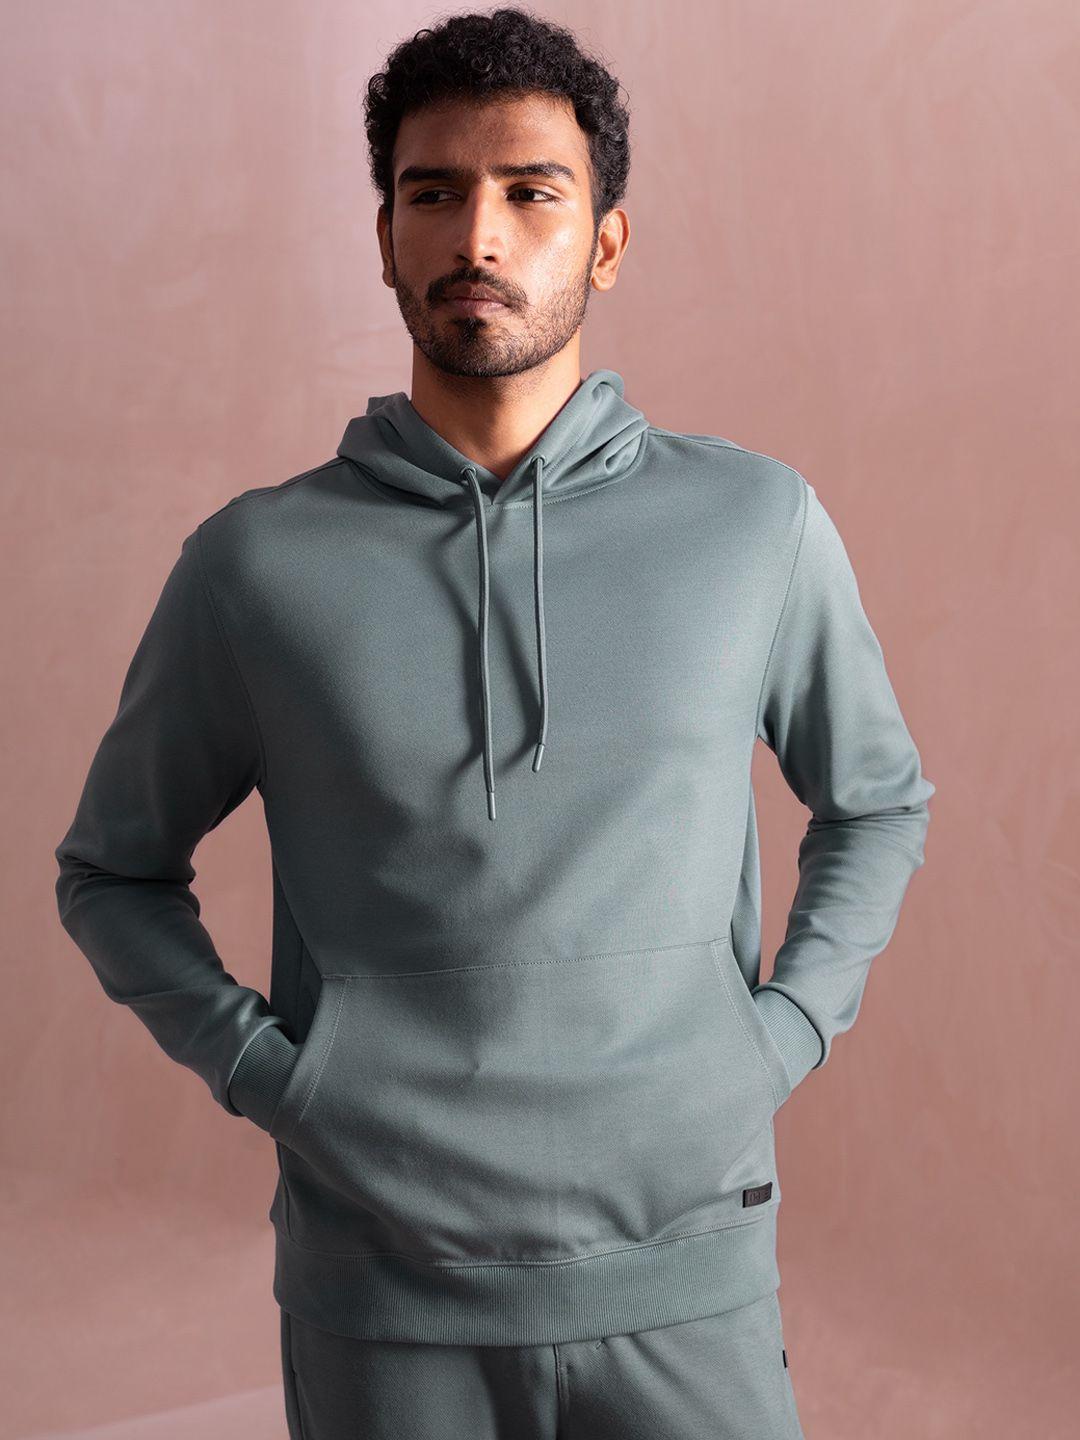 damensch statement elemental soft premium cotton blend hooded sweatshirt